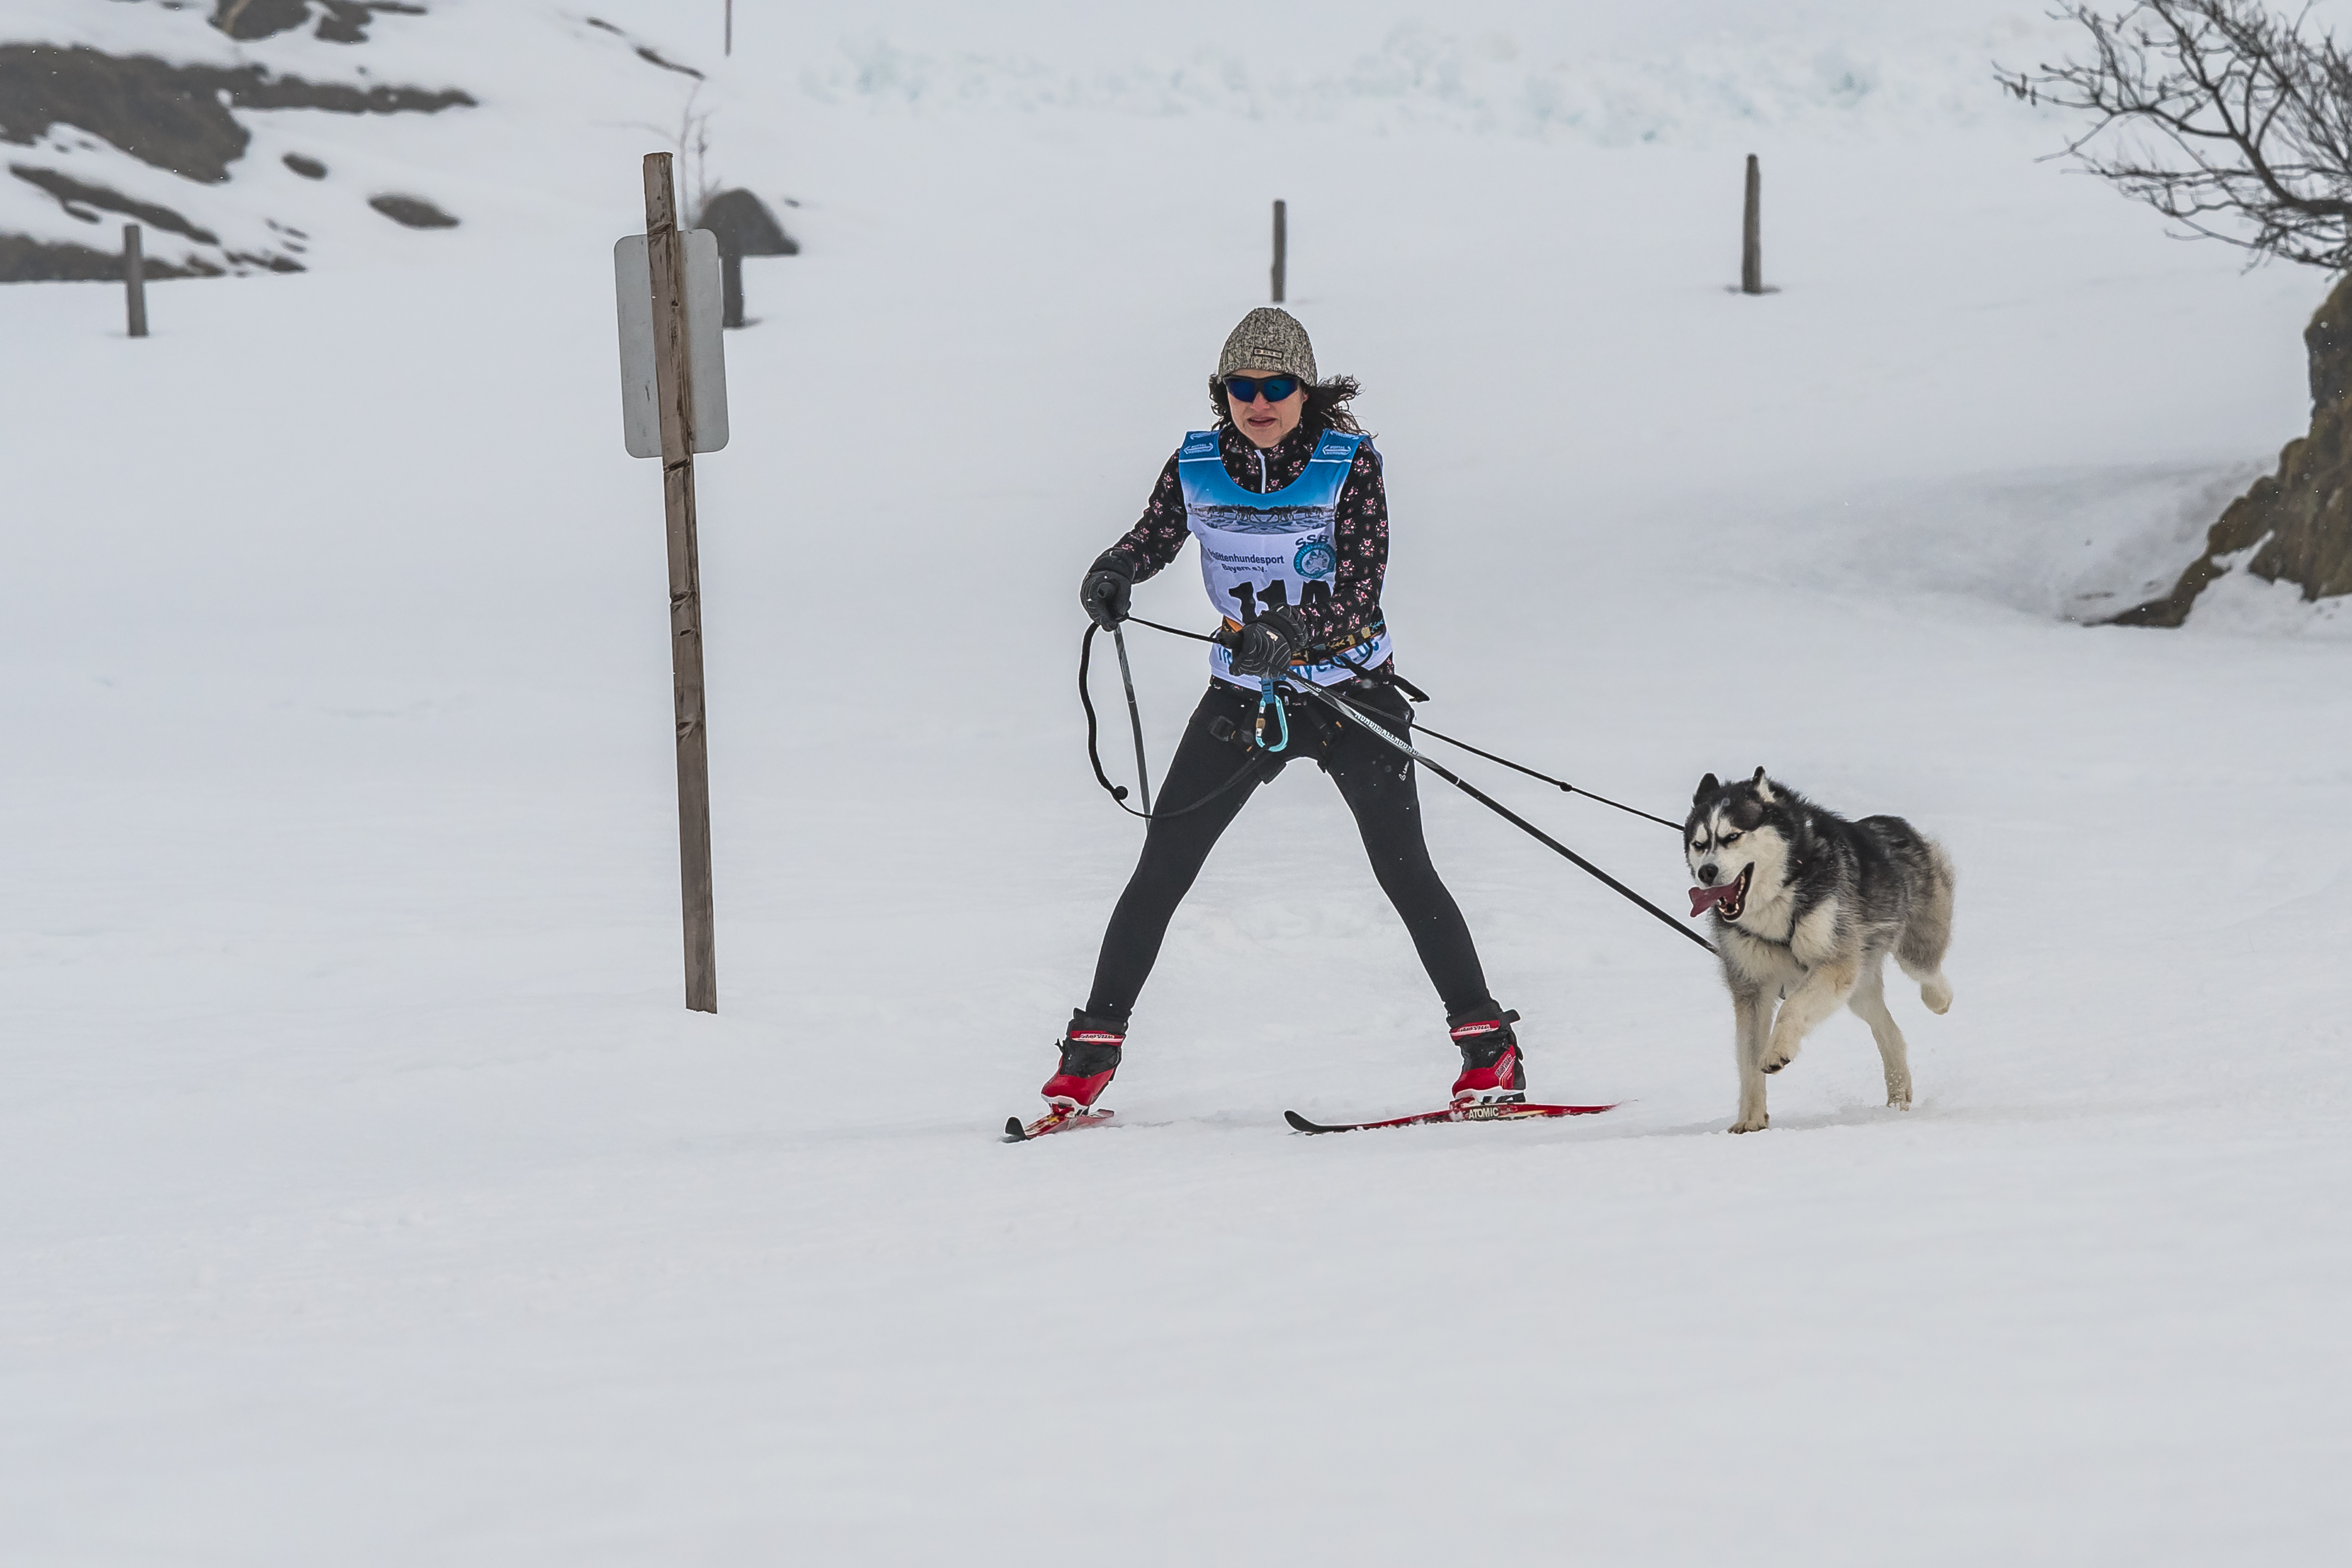 Skijoering Damen 1 Hund Kat1 Aigner-8413.jpg Wikimedia Commons